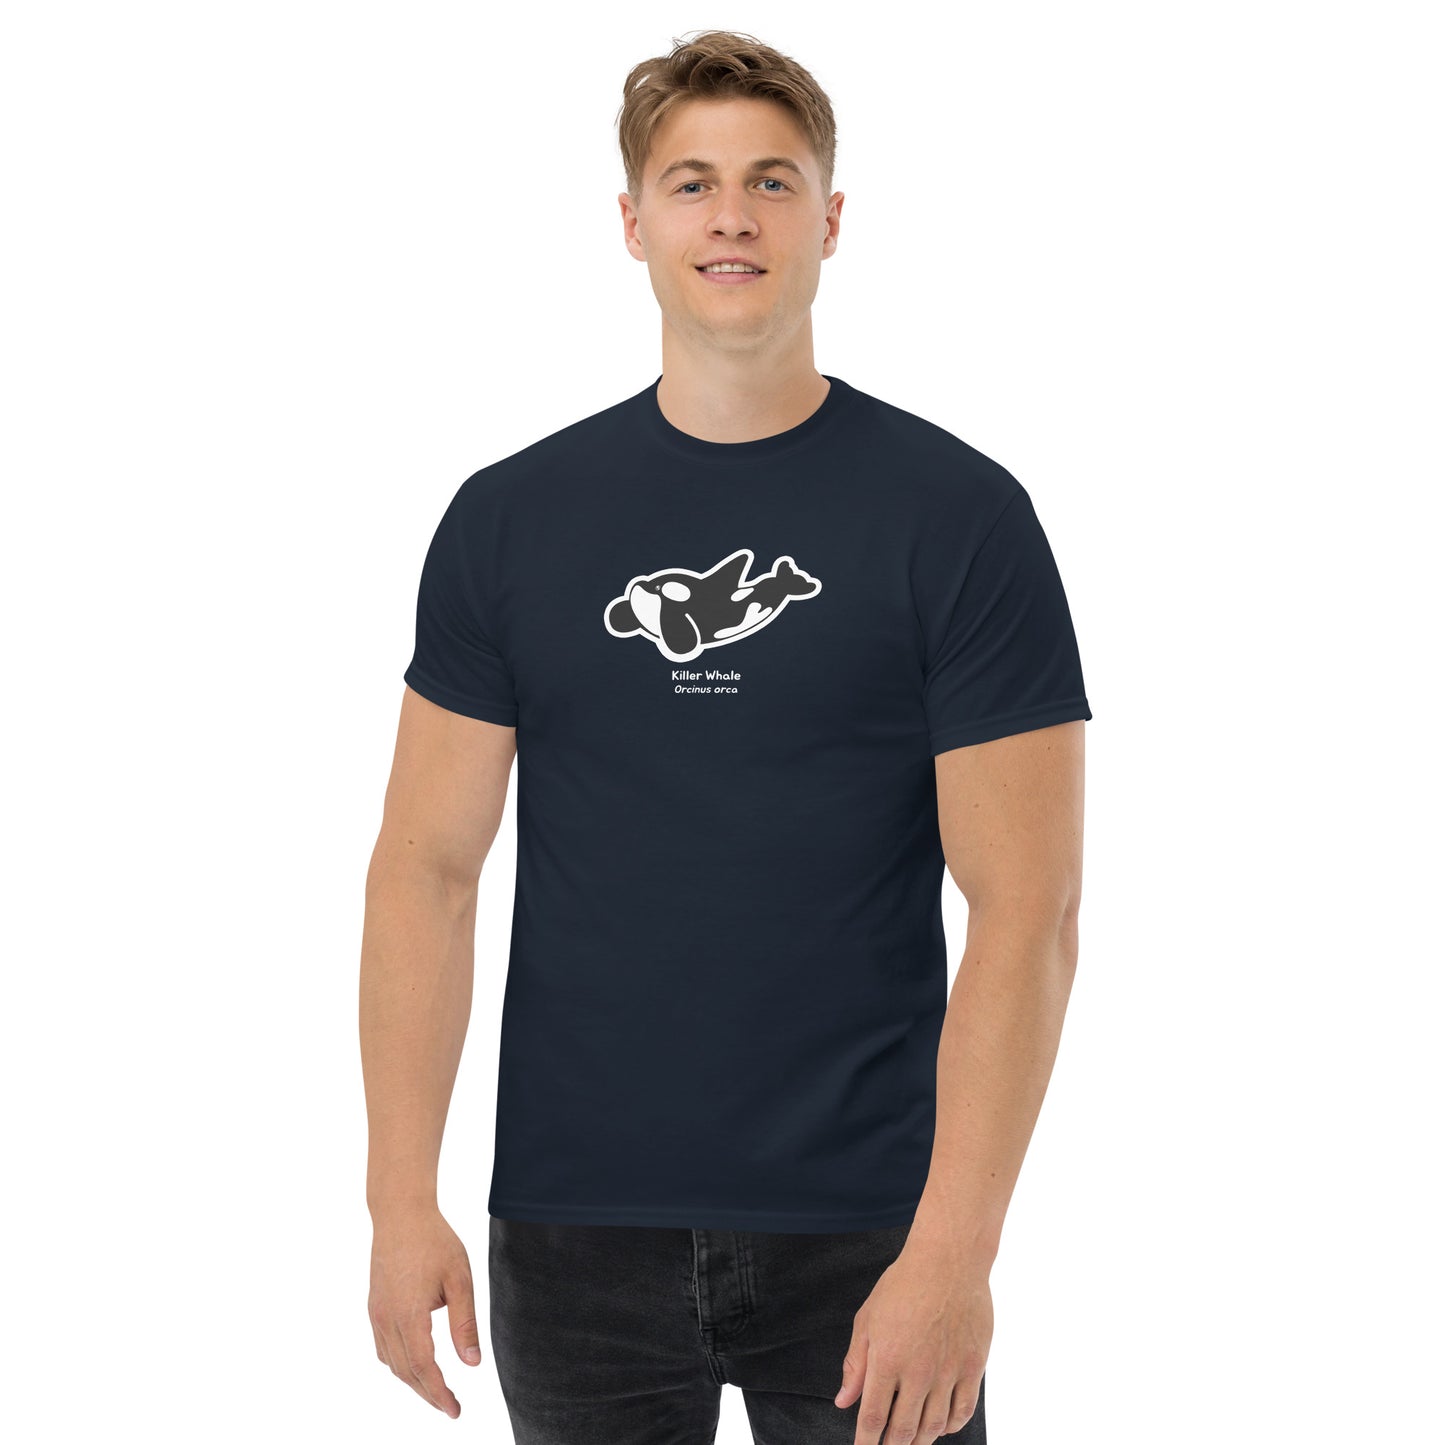 Killer Whale Adult Unisex T-Shirt